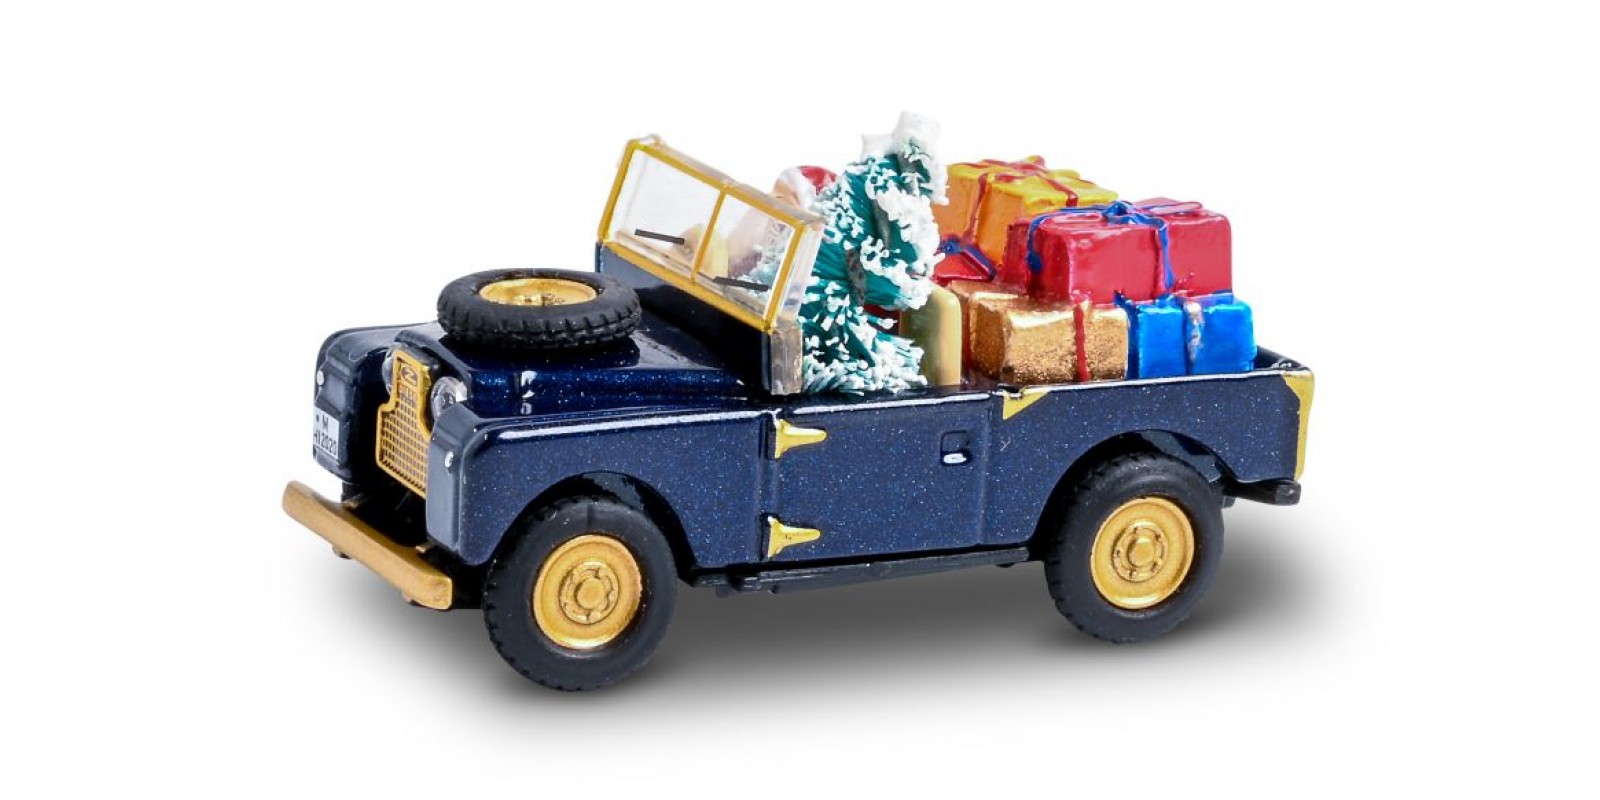 SC452656100 Land Rover Weihnachtsmodell 1 Figur plus Baum und Geschenkpaketen